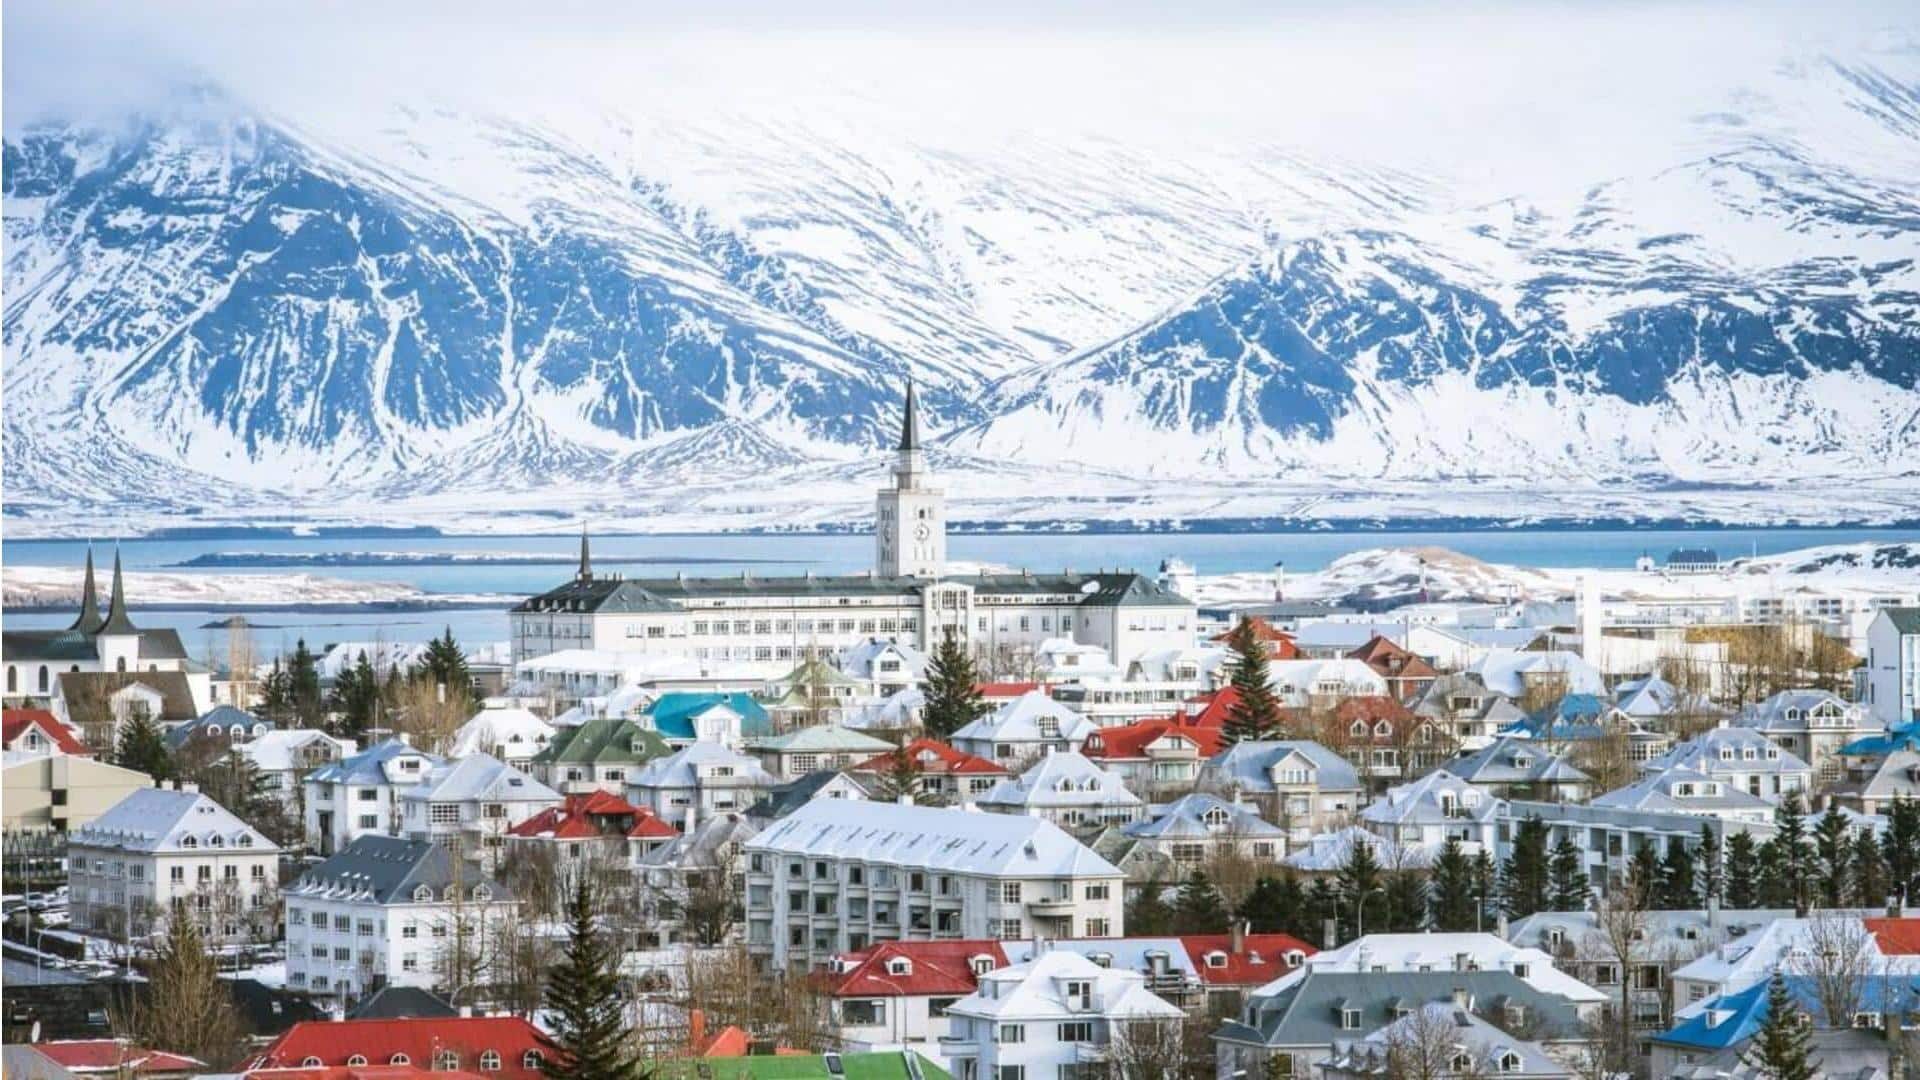 Liburan musim panas di Reykjavik, Islandia: Hal-hal yang dapat dilakukan